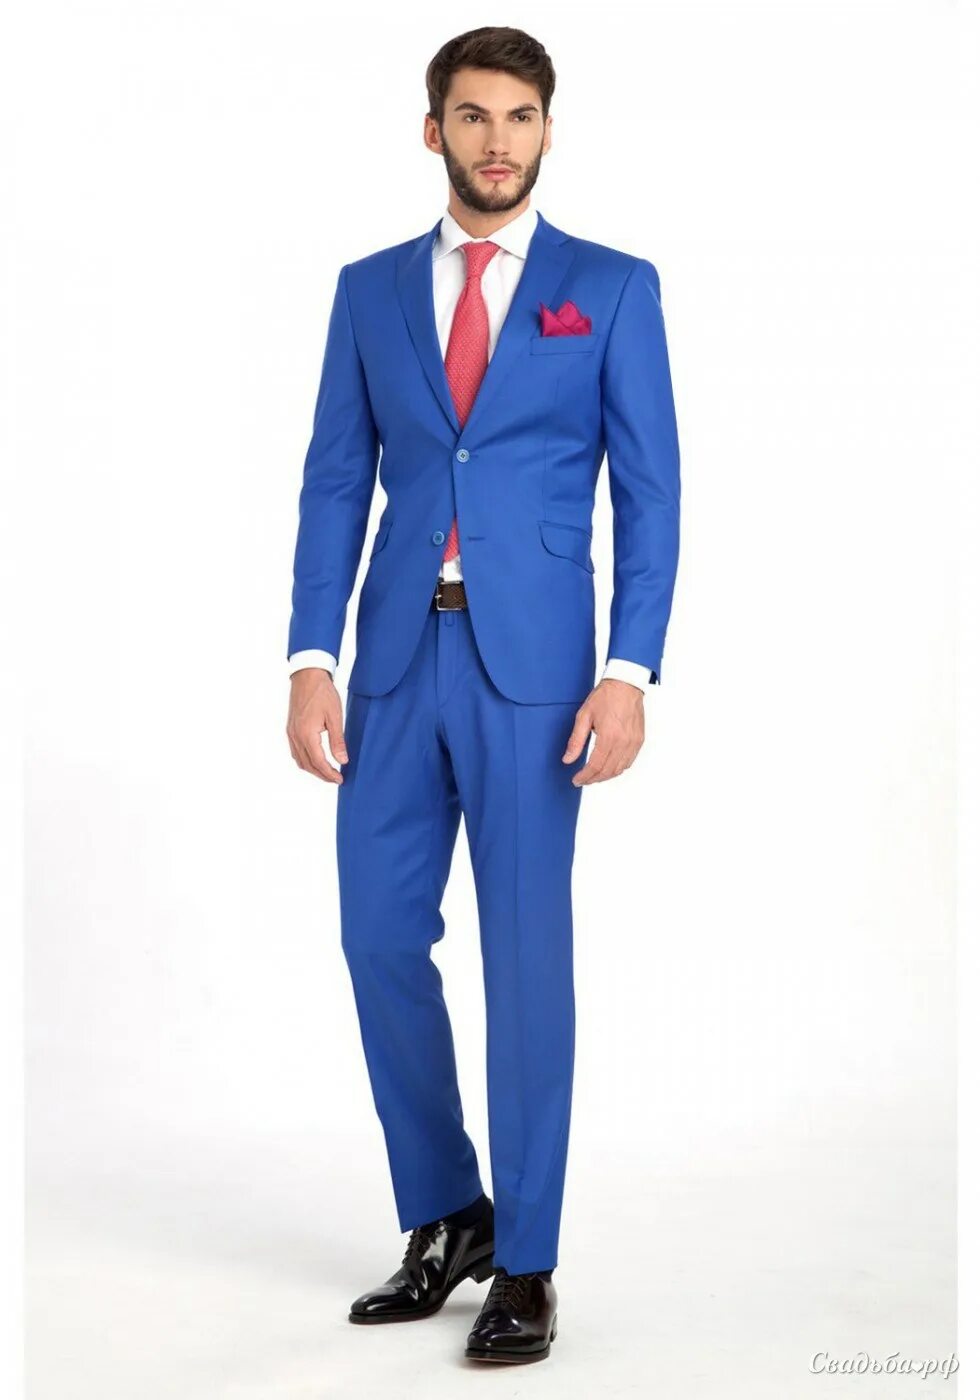 Костюм мужской, синий. Синий костюм мужской с красным галстуком. Ярко синий костюм мужской. Синий костюм мужской с галстуком. Крокус мужчины в синей одежде